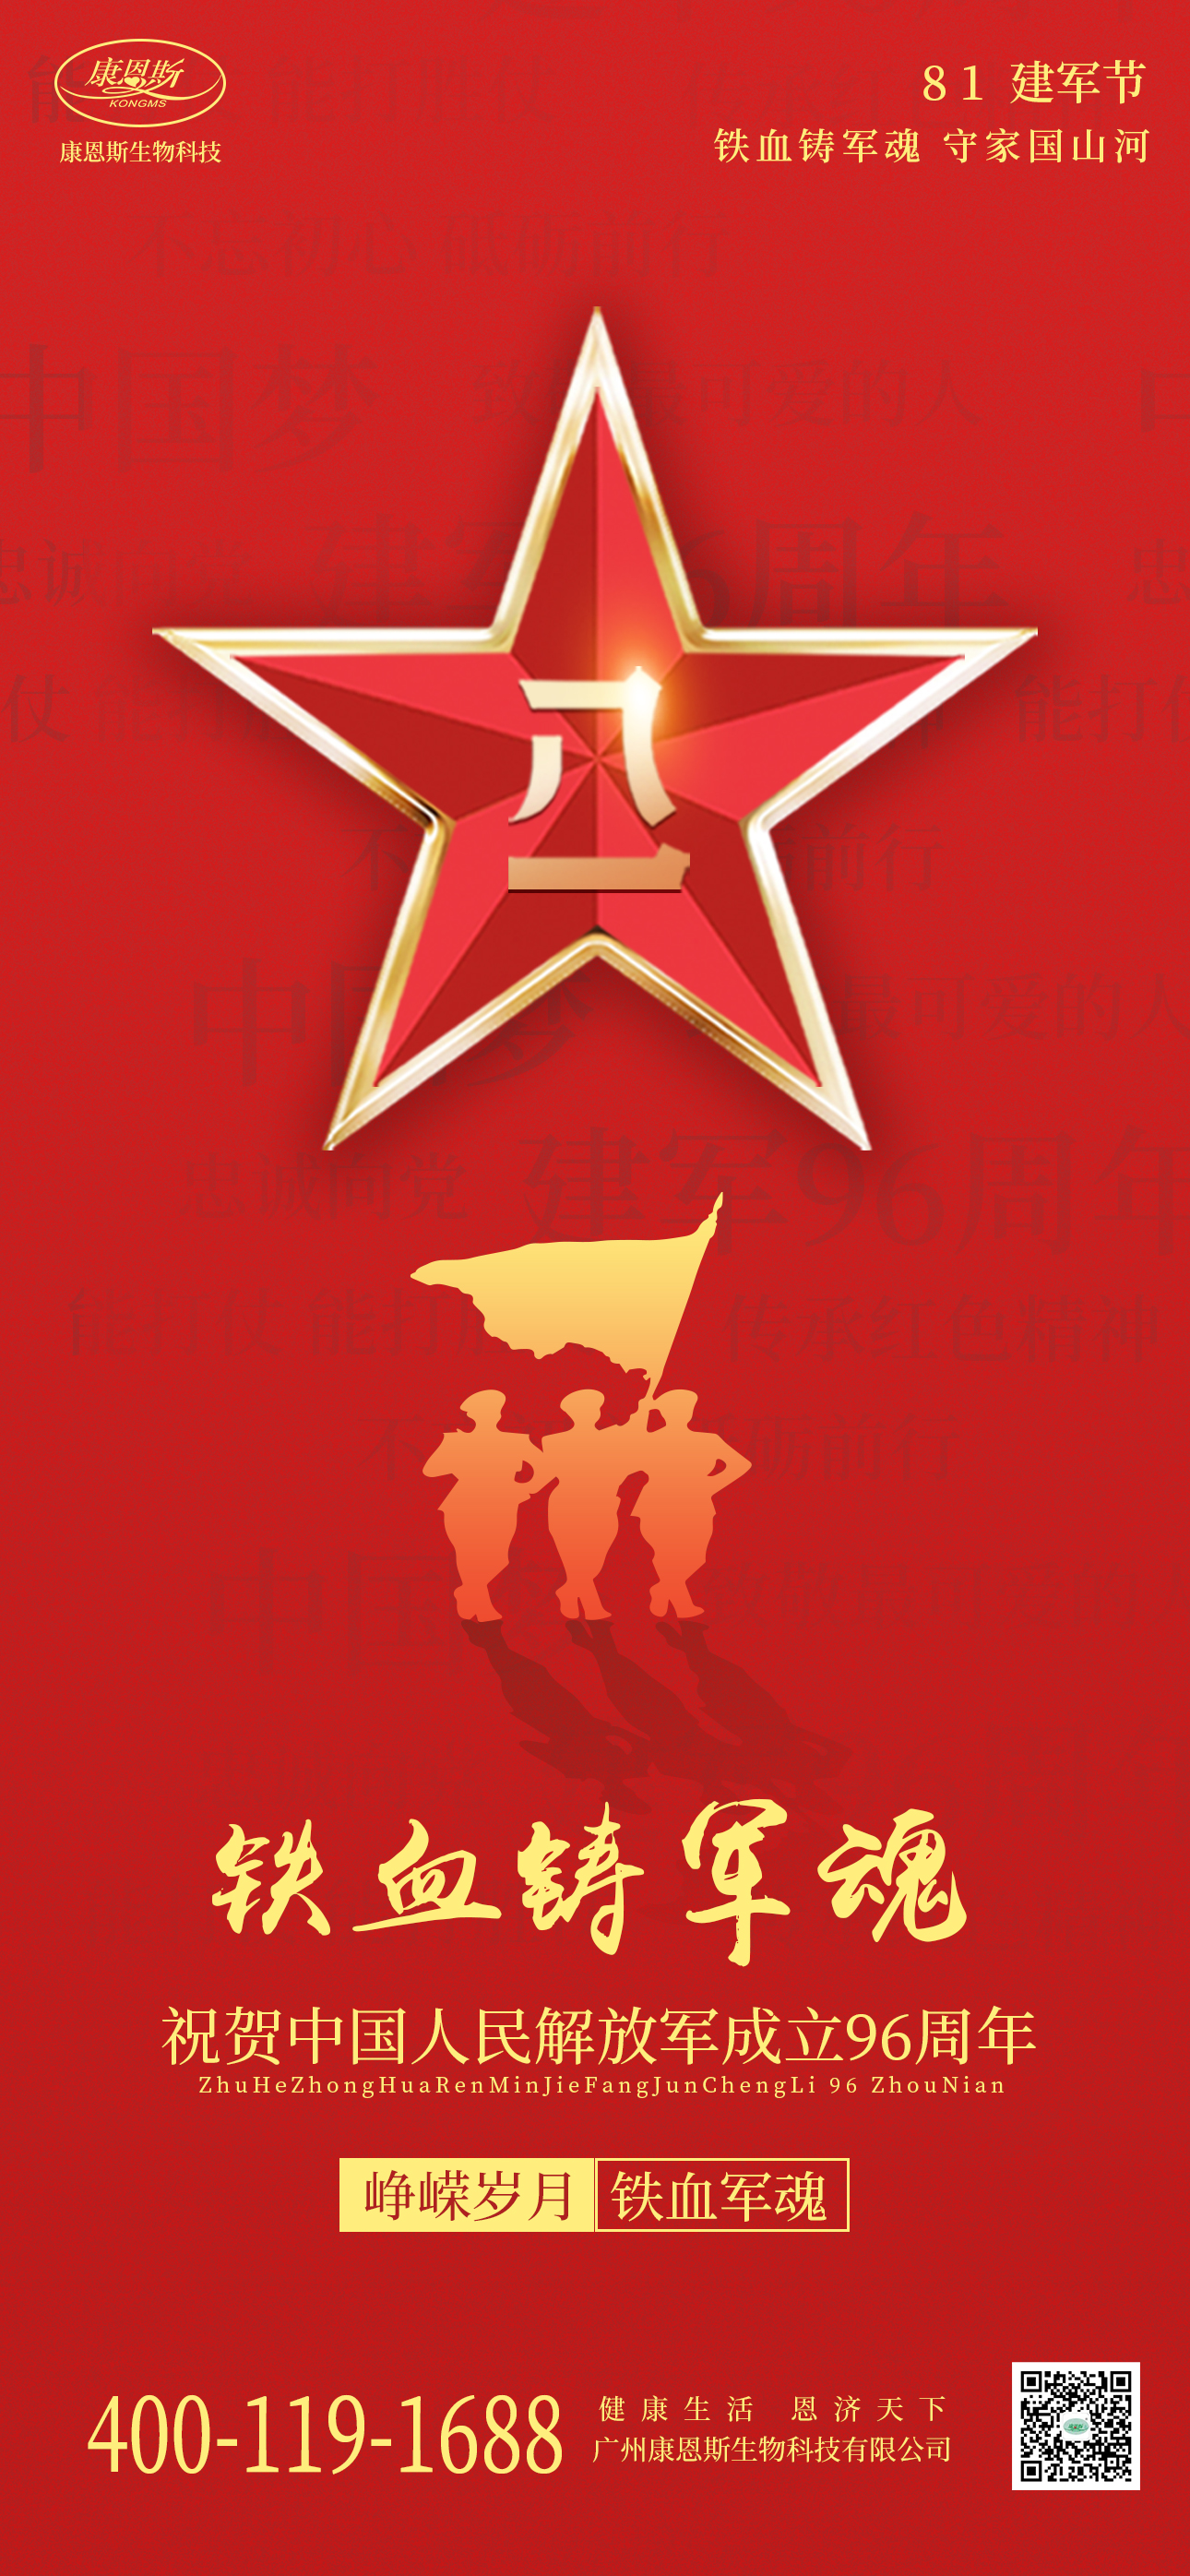 康恩斯祝賀中國人民解放軍成立96周年